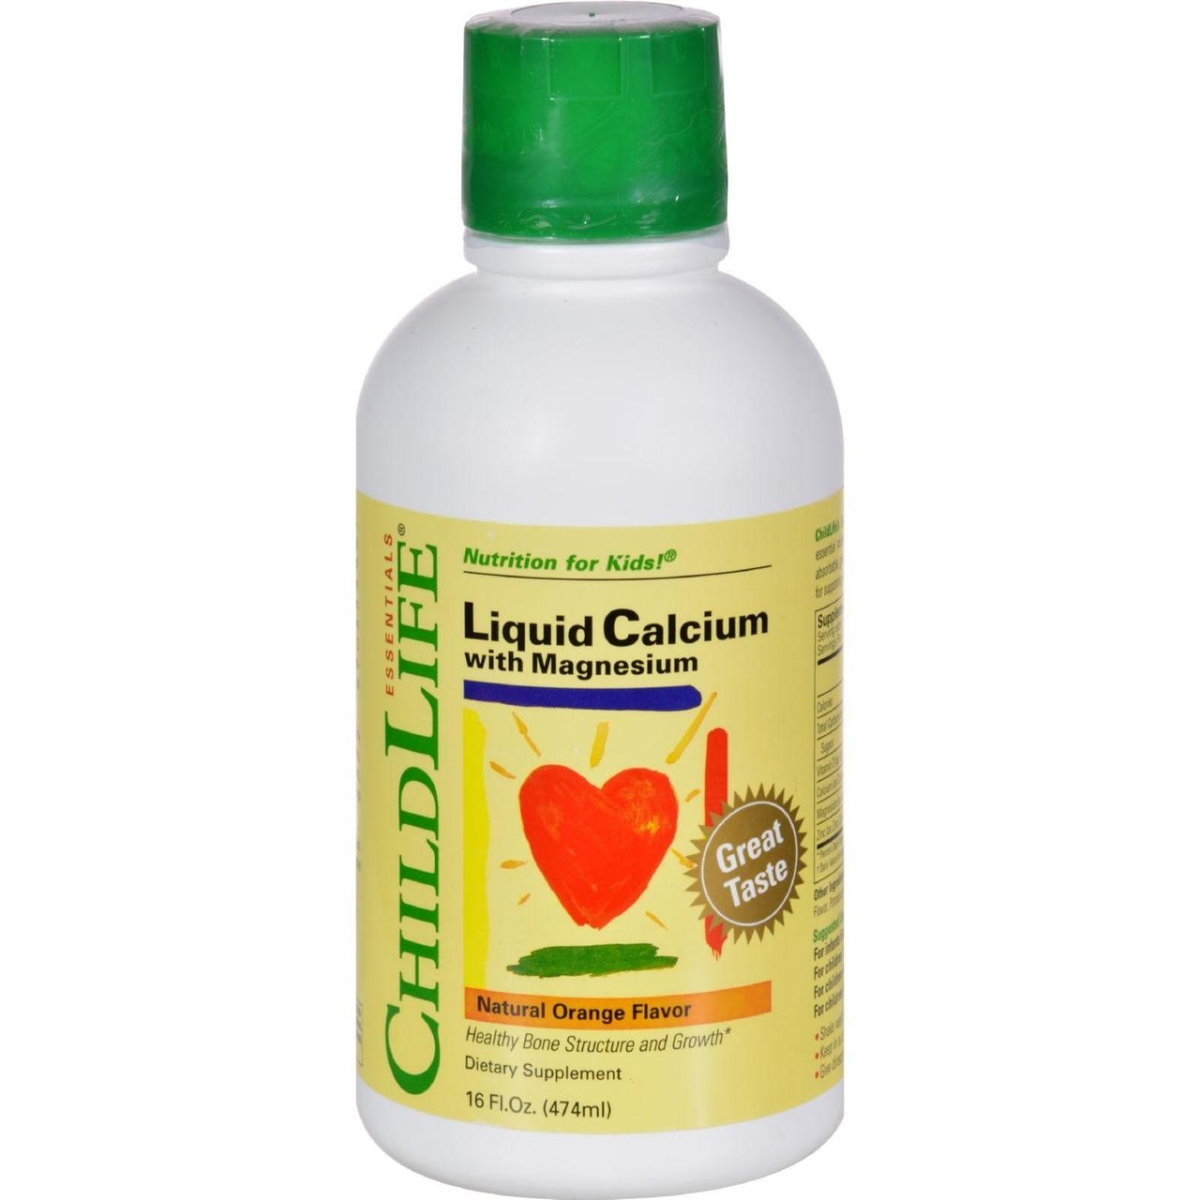 Picture of Child Life HG0690636 16 fl oz Liquid Calcium with Magnesium - Natural Orange